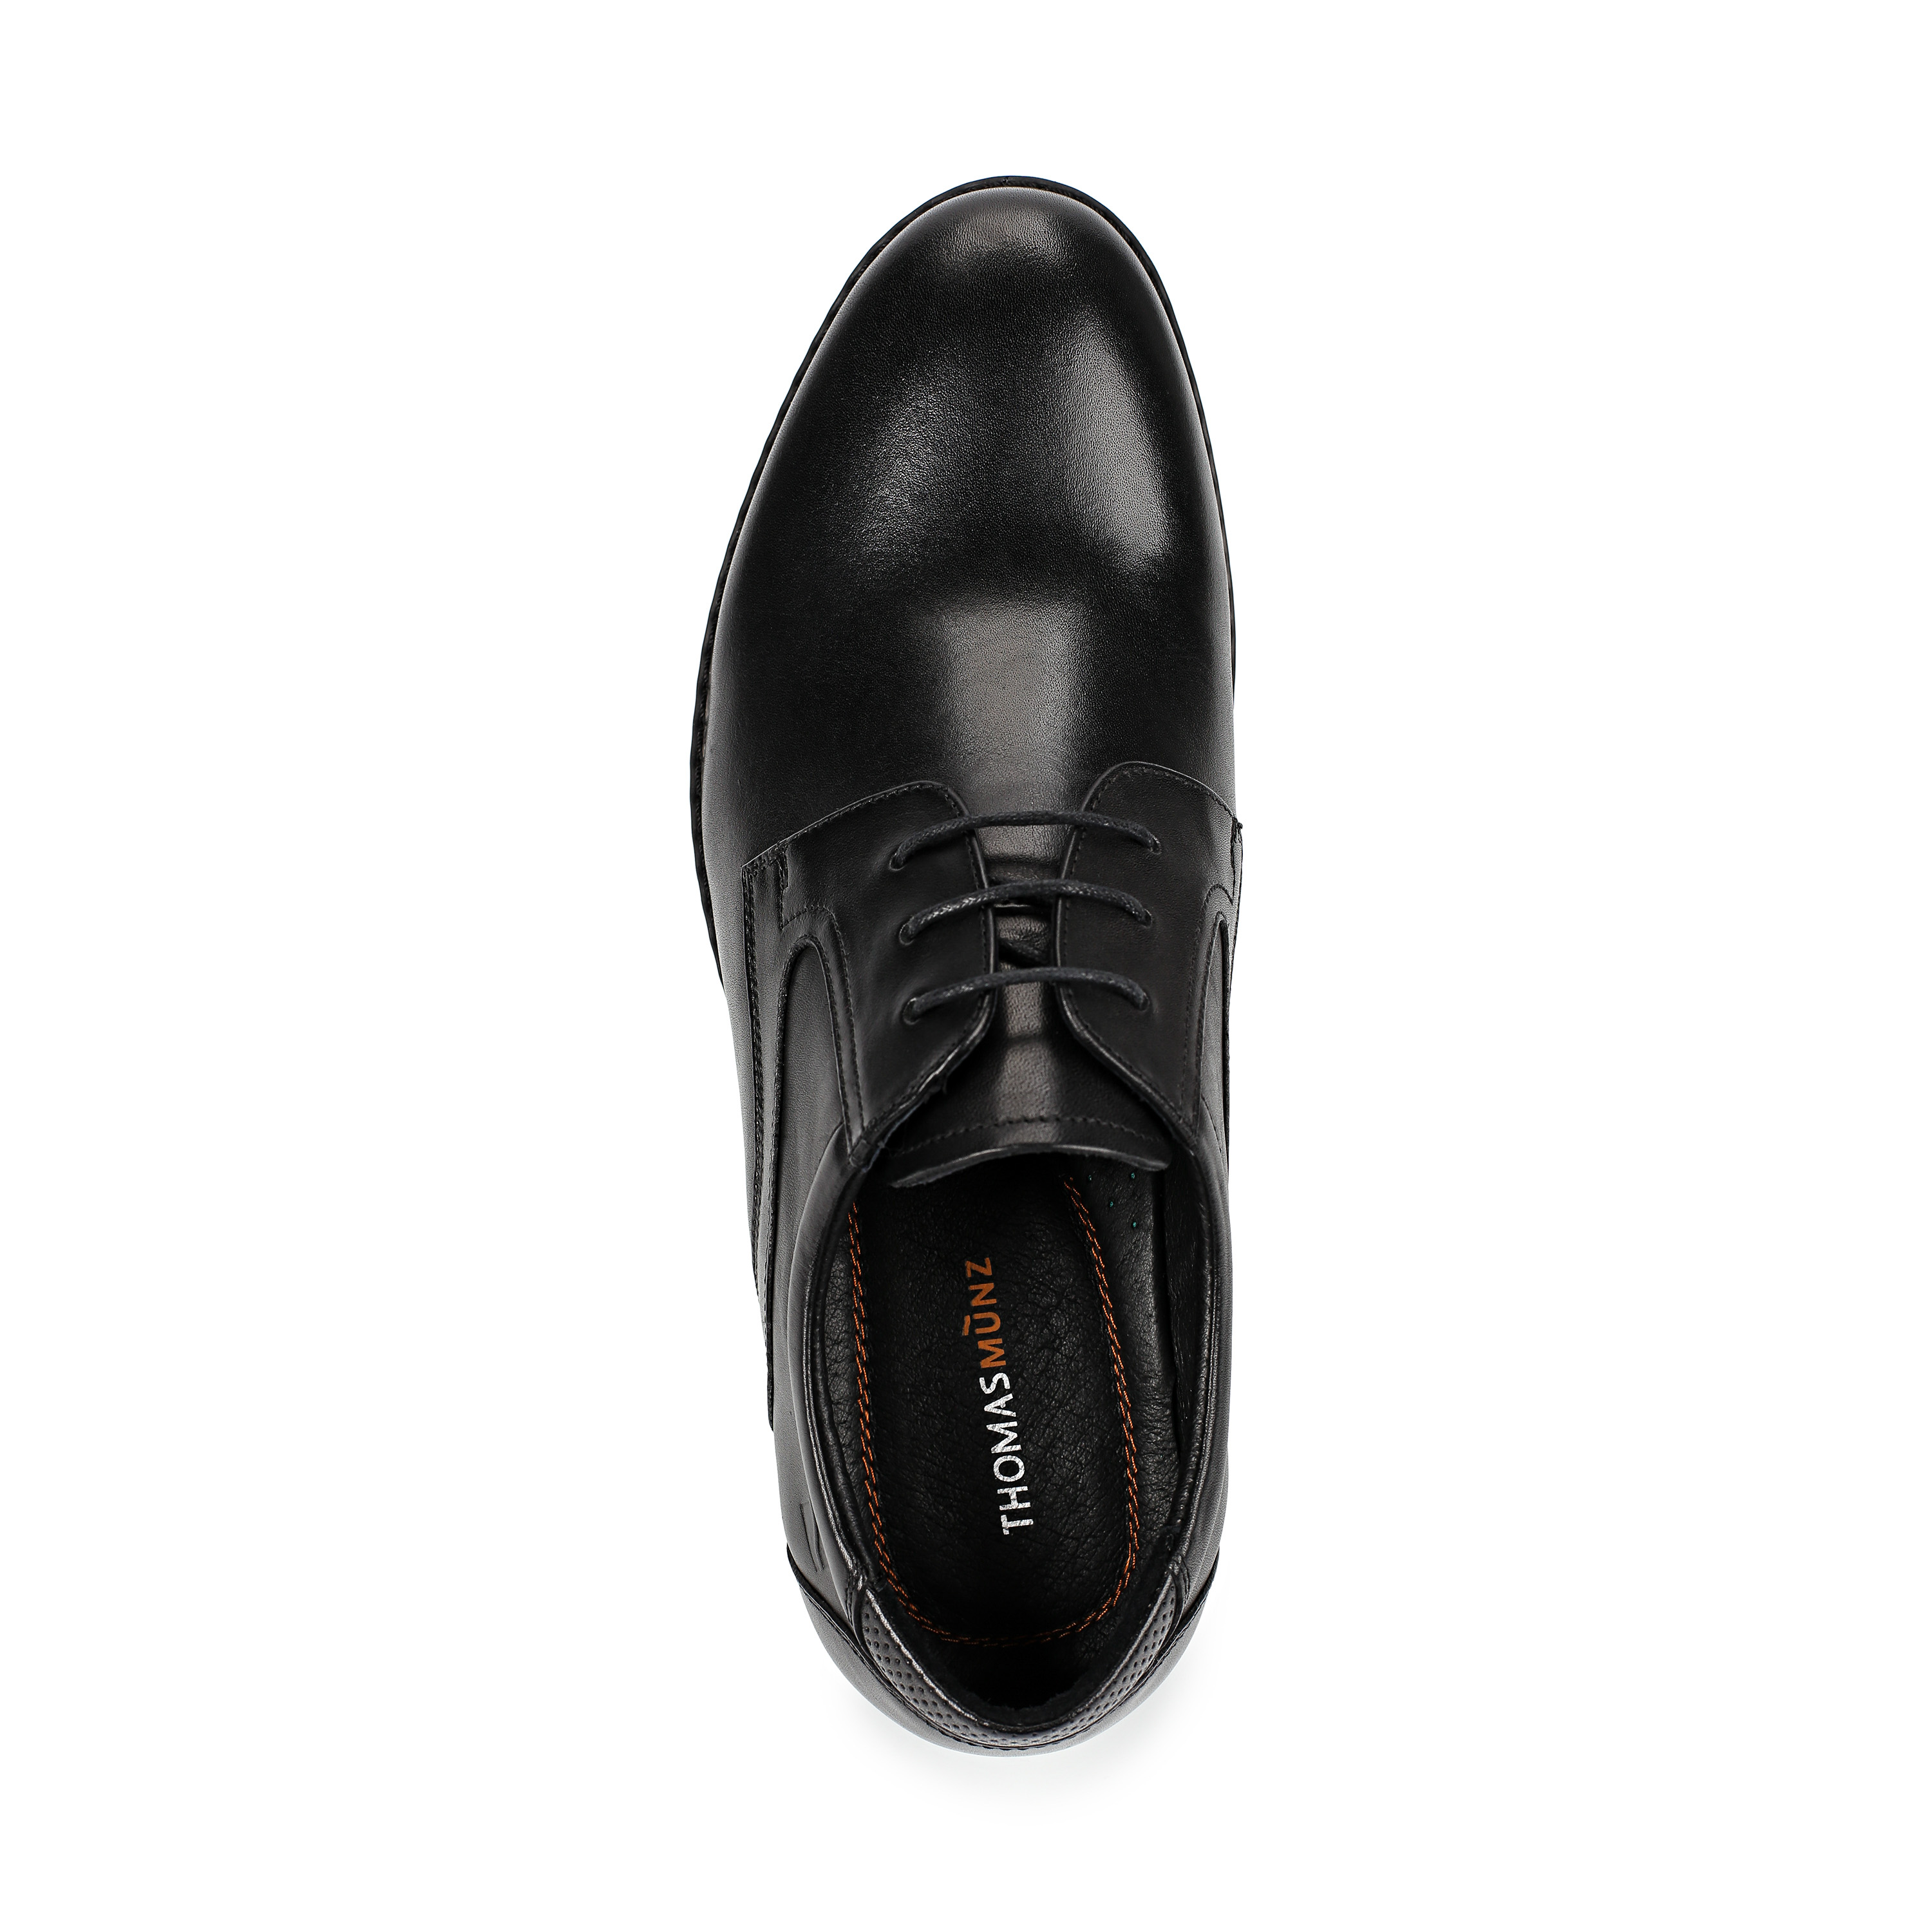 Туфли Thomas Munz 58-072A-1101, цвет черный, размер 41 - фото 5